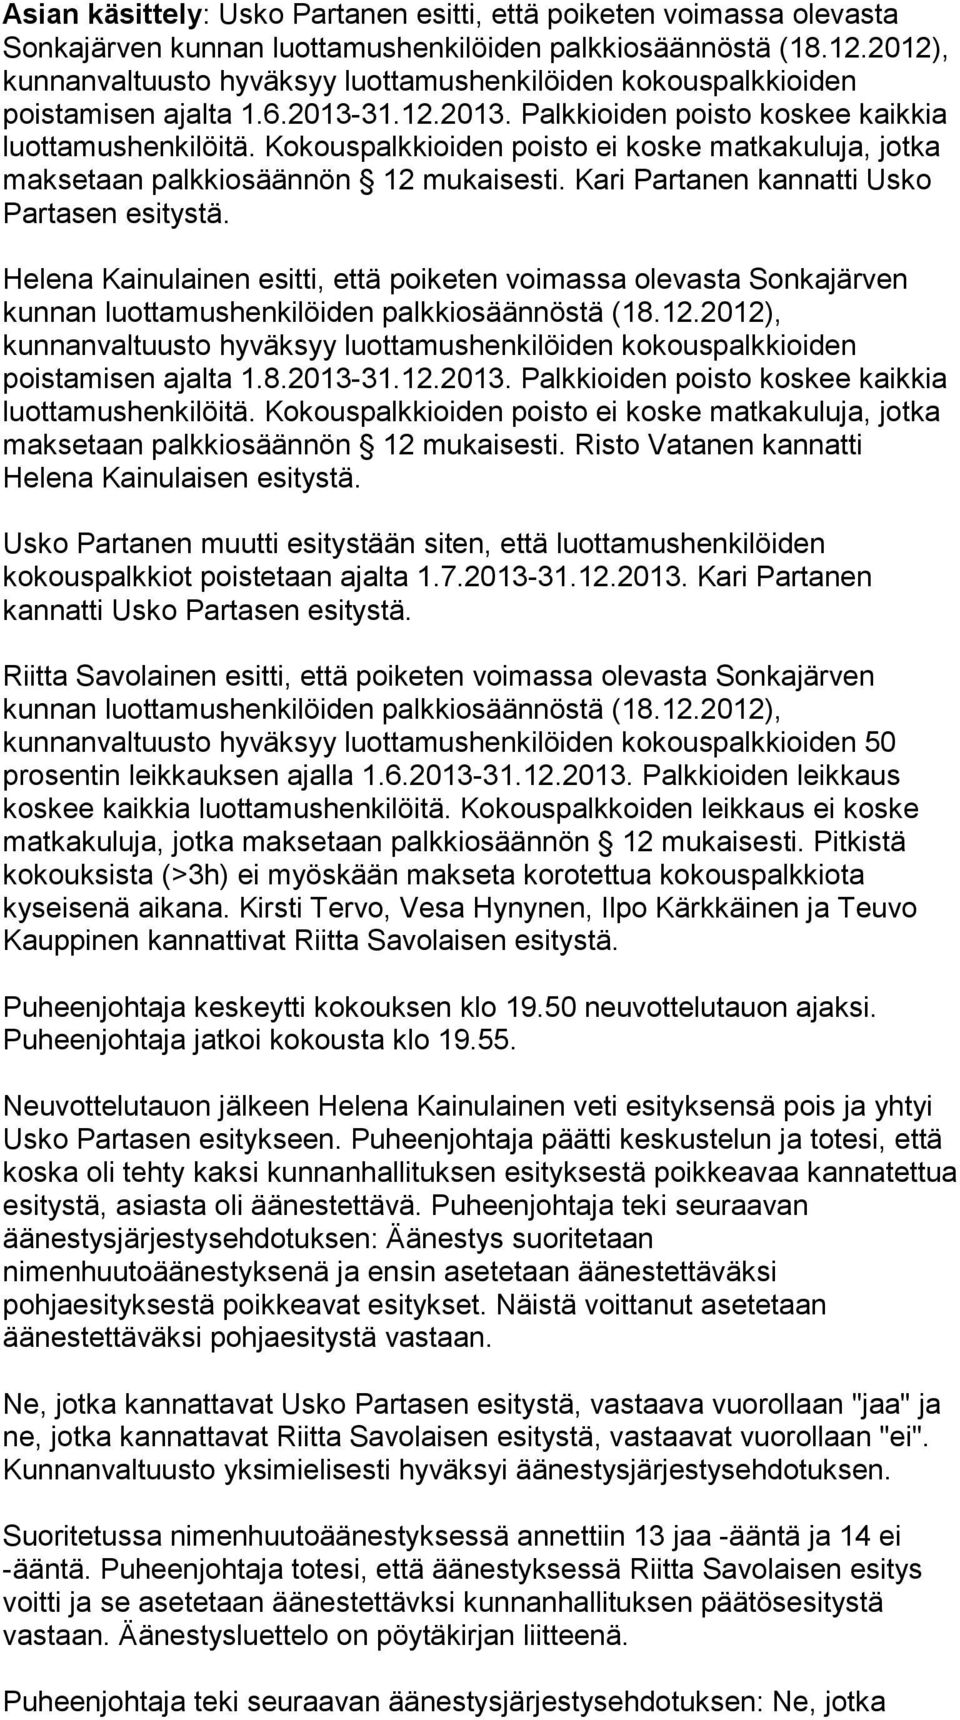 Helena Kainulainen esitti, että poiketen voimassa olevasta Sonkajärven kunnan luottamushenkilöiden palkkiosäännöstä (18.12.2012), poistamisen ajalta 1.8.2013-